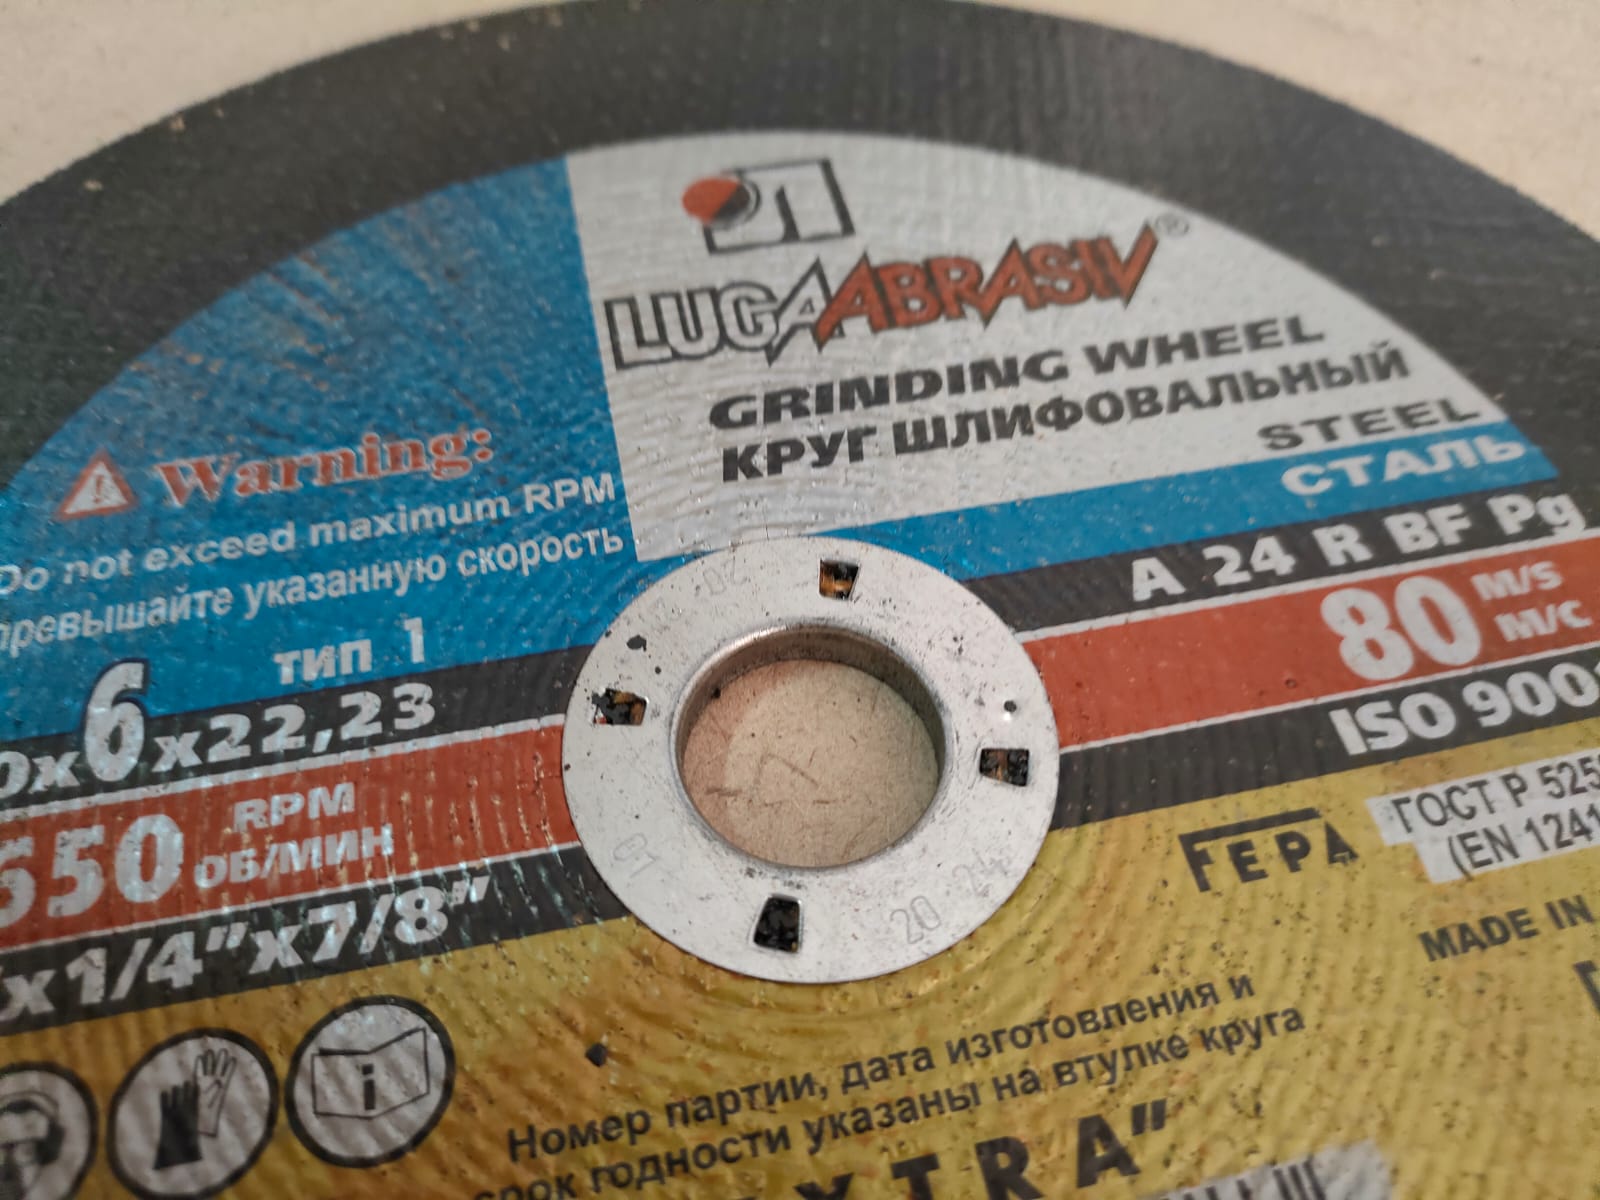 Круг (диск) шлифовальный / зачистной по металлу для болгарки 230 х 6 х 22 мм ЛУГА (1 шт)